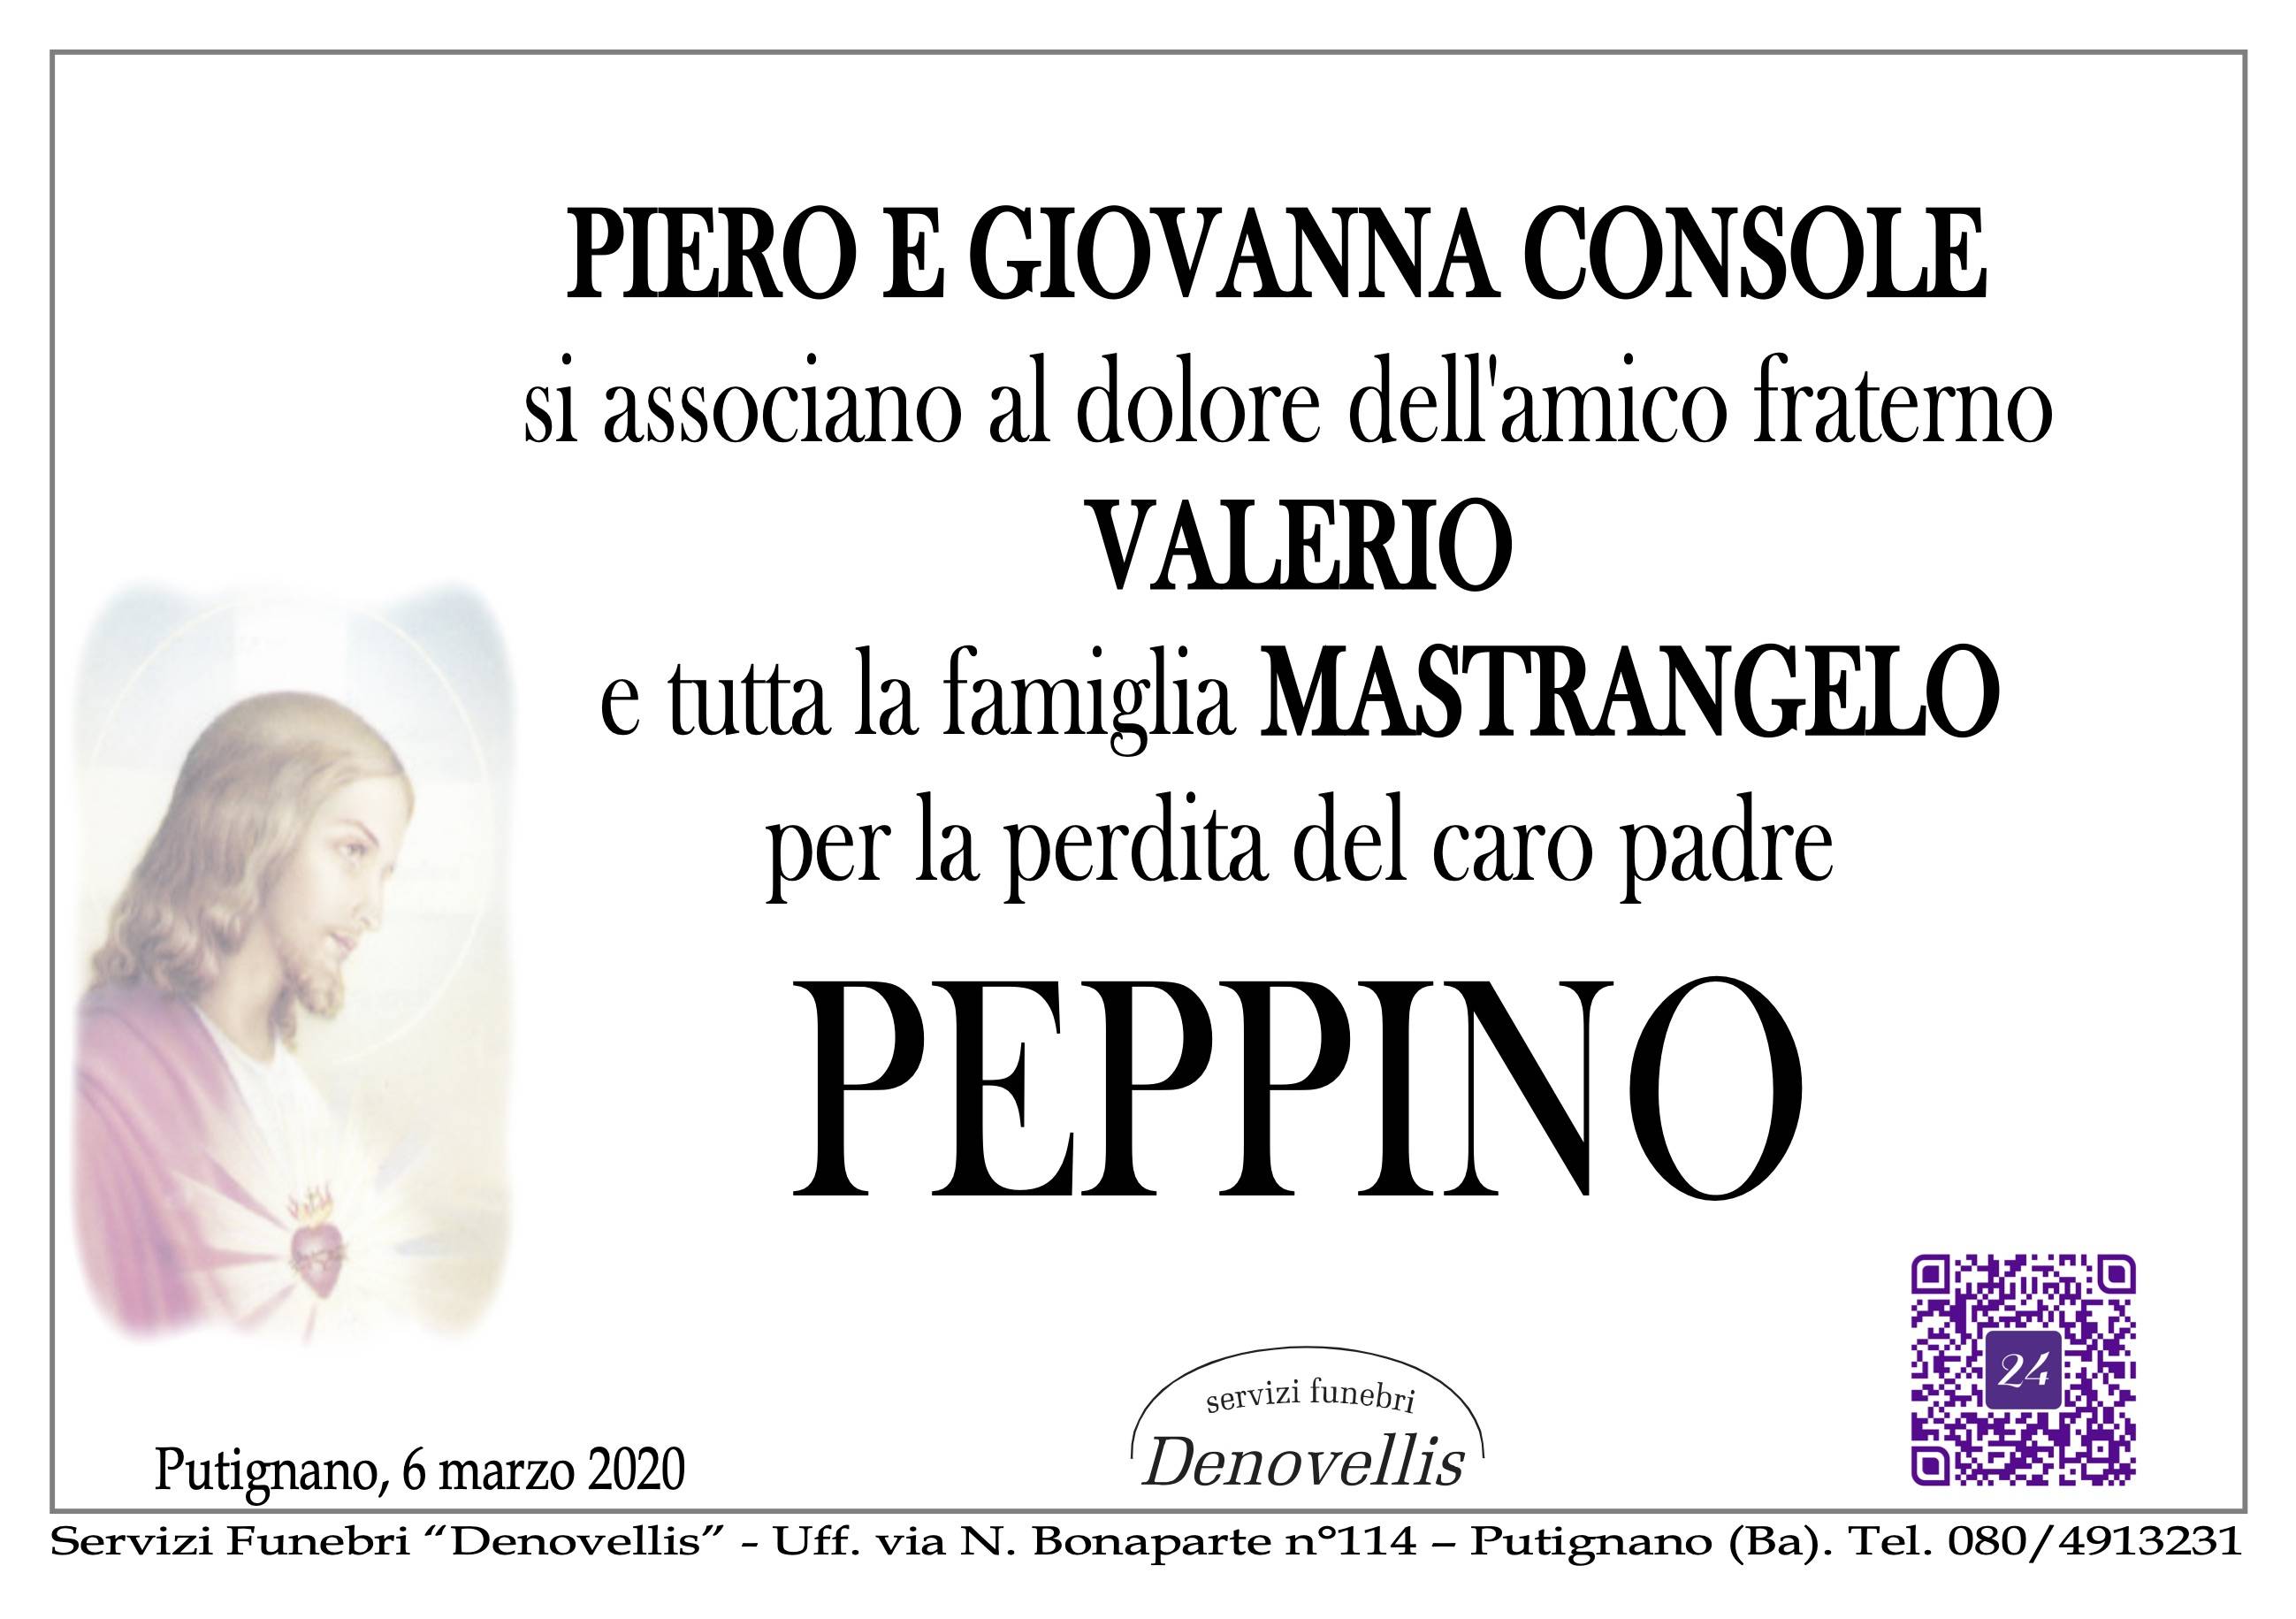 "Piero e Giovanna Console"